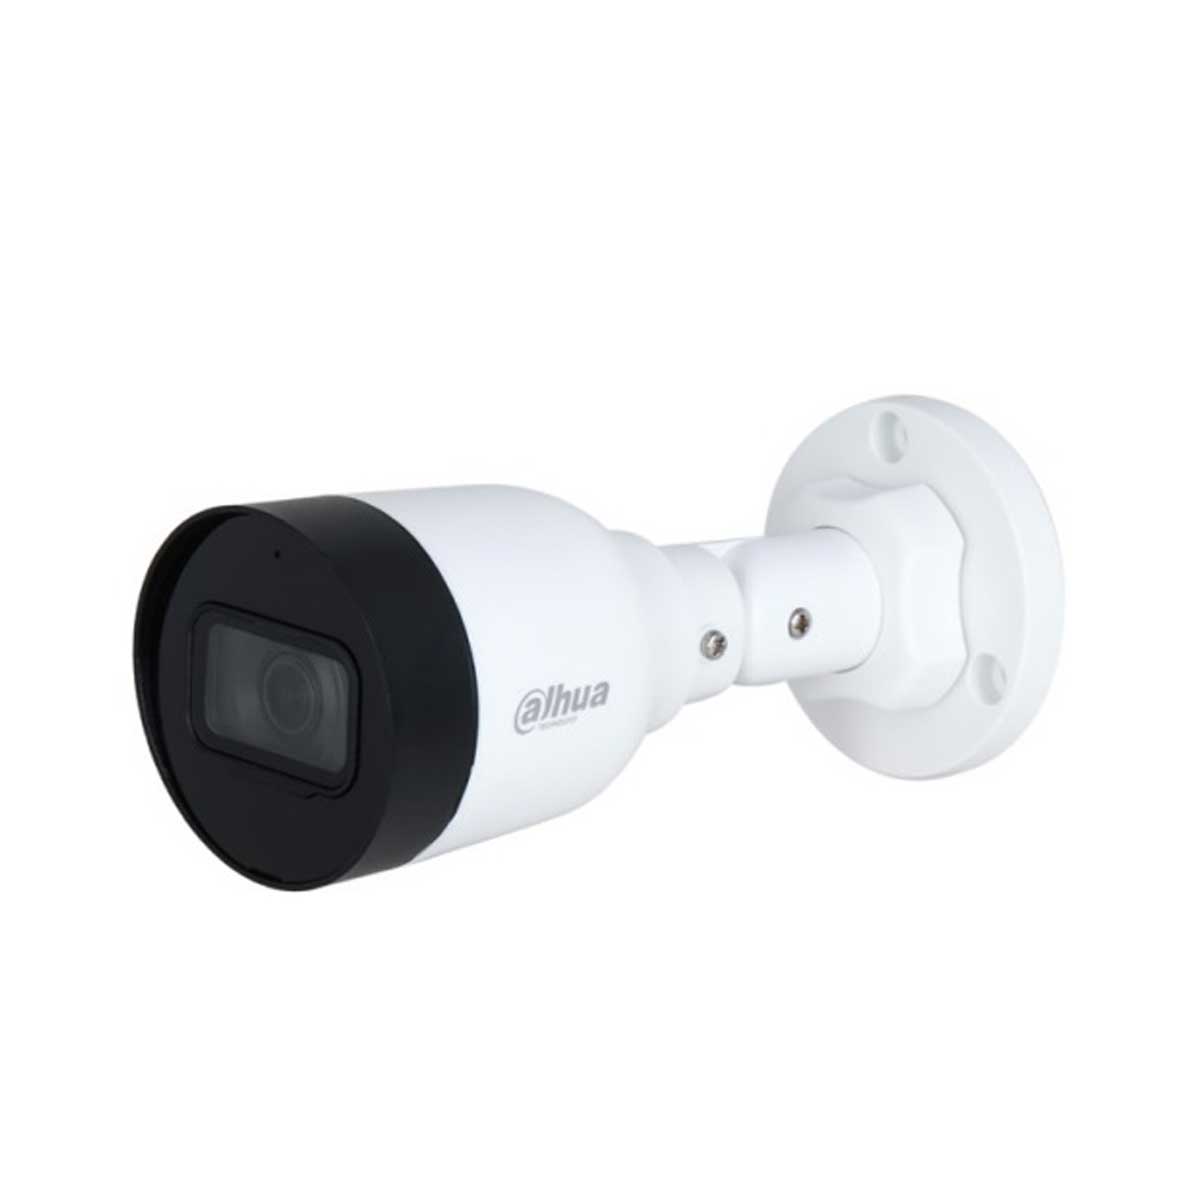  Camera thân IP 4mp Dahua DH-IPC-HFW1431S1-A-S4 hồng ngoại 30m, tích hợp mic 